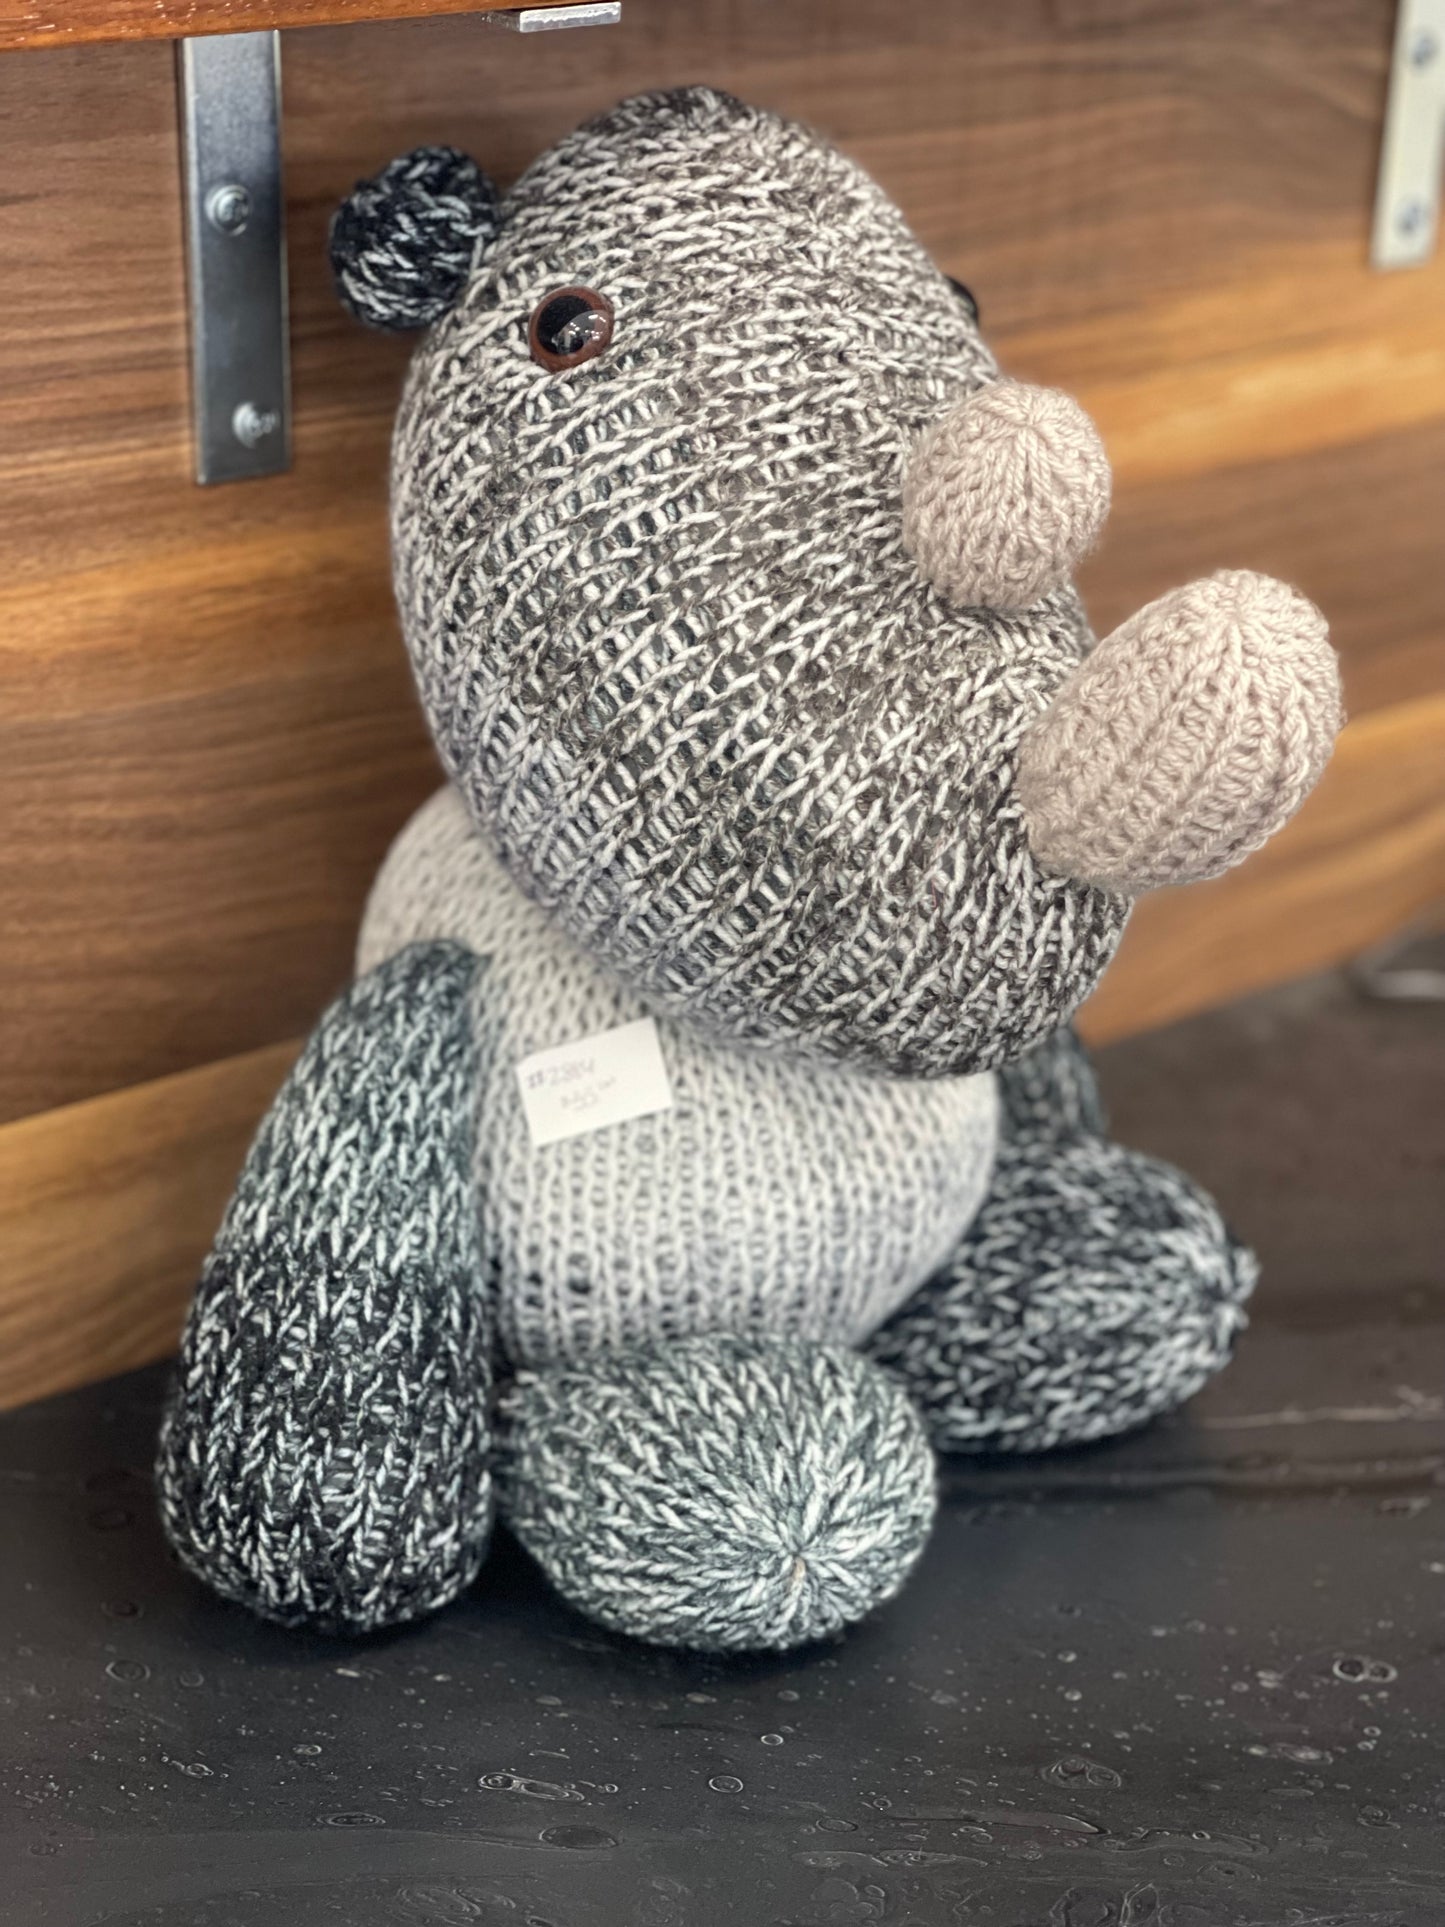 Rhino handmade crochet stuffed animal